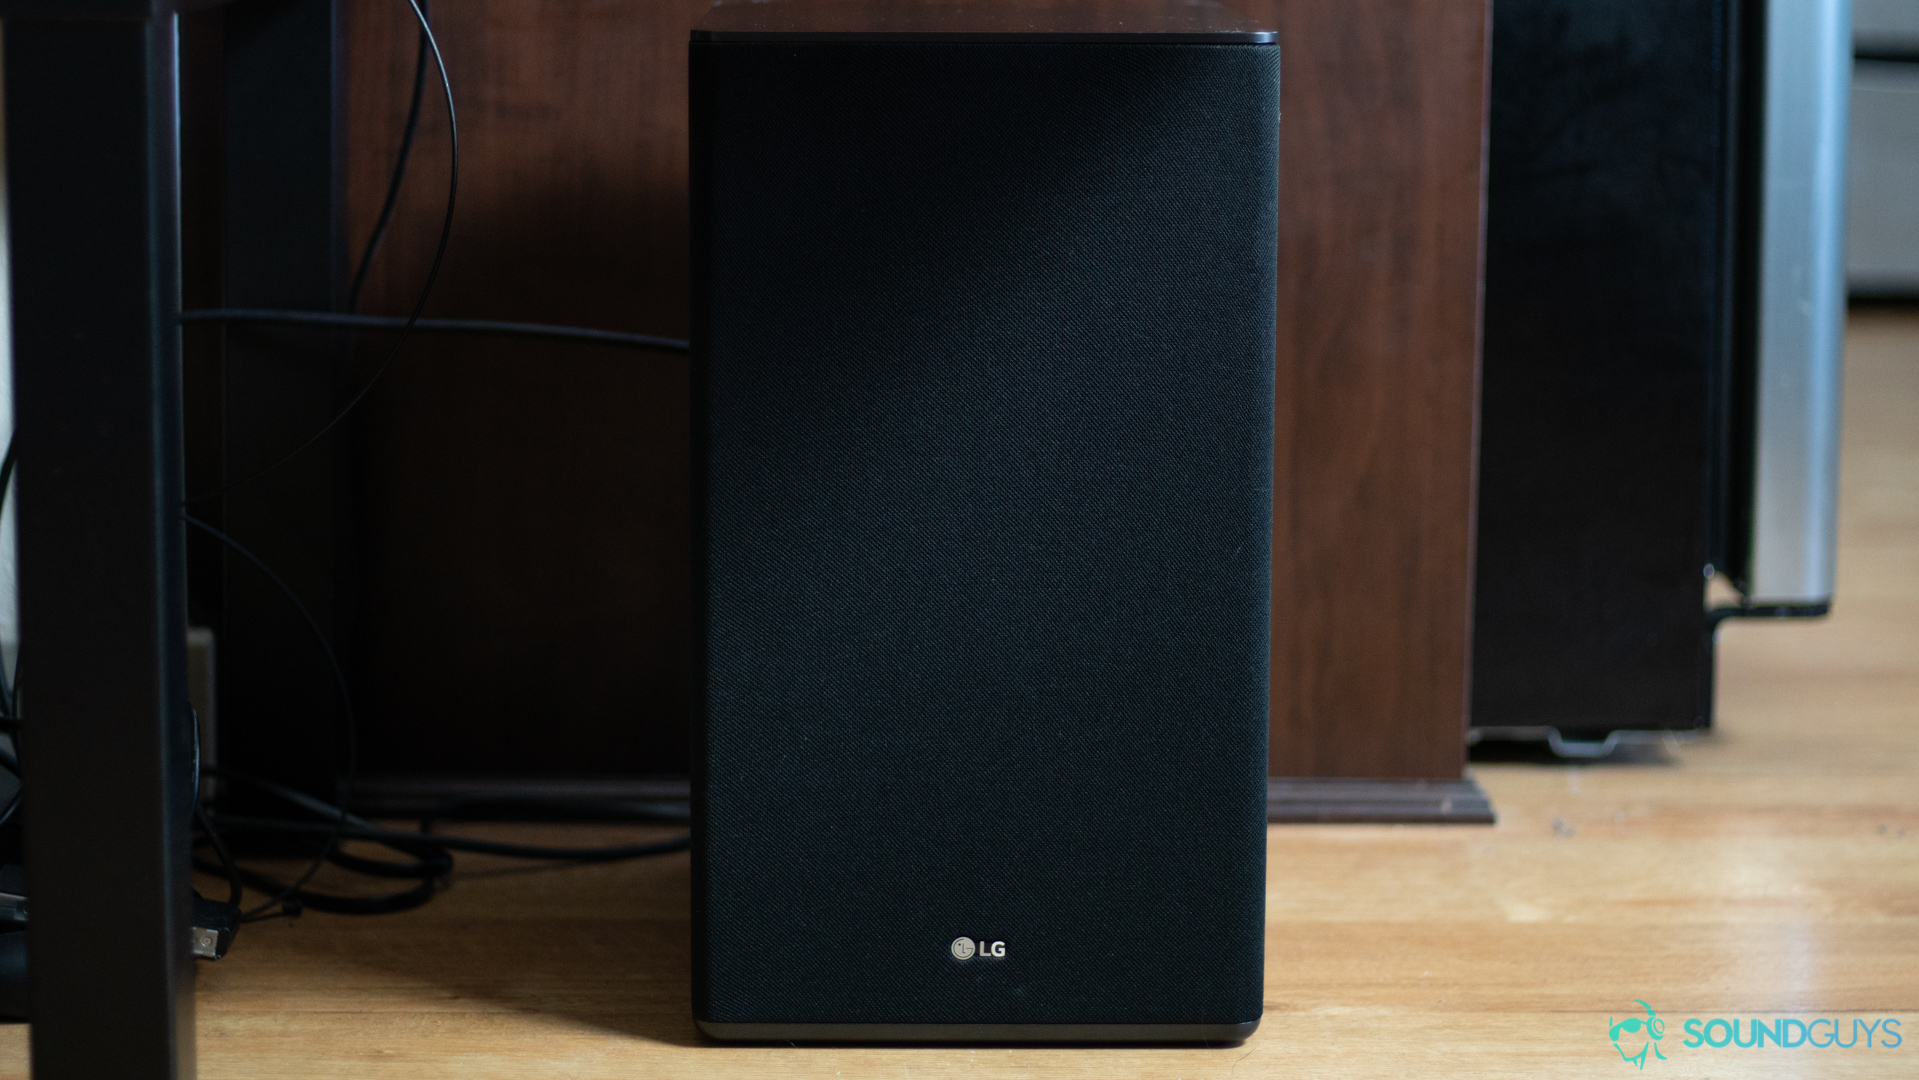 How to setup surround sound home audio - SoundGuys